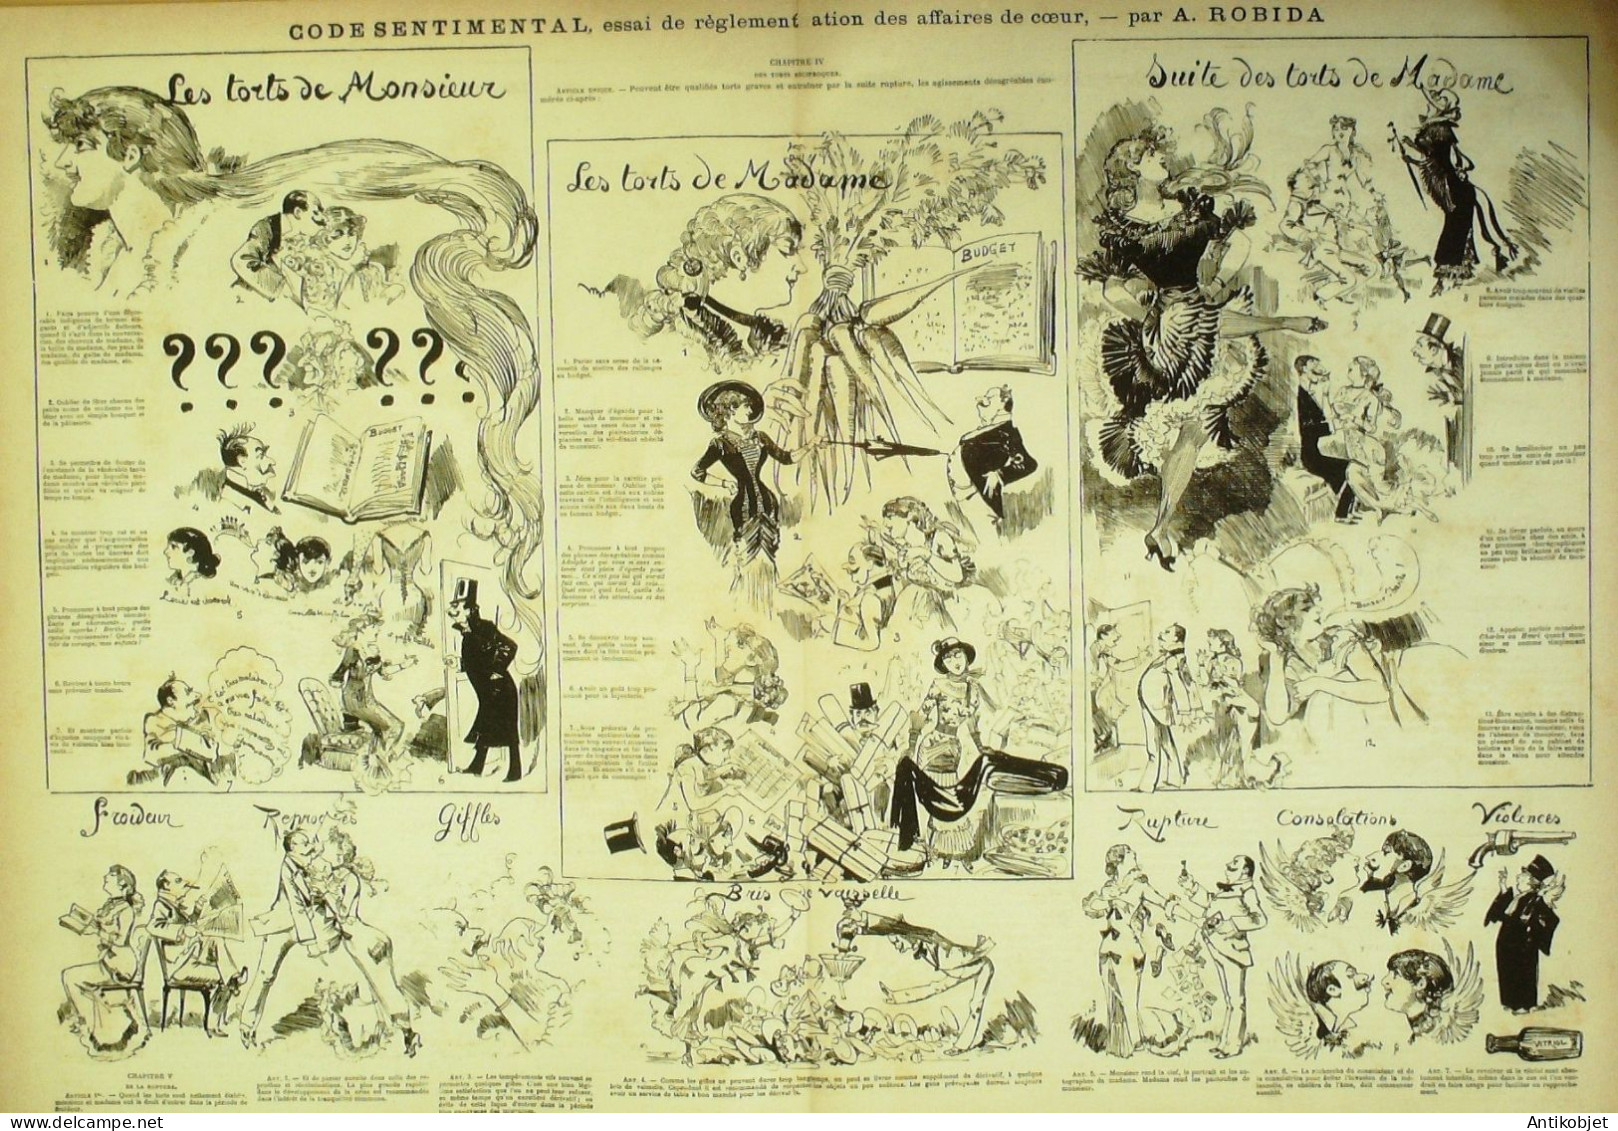 La Caricature 1881 N°100 Code Sentpapillons Trock Expo D'électricité Dranerimental Robida - Magazines - Before 1900